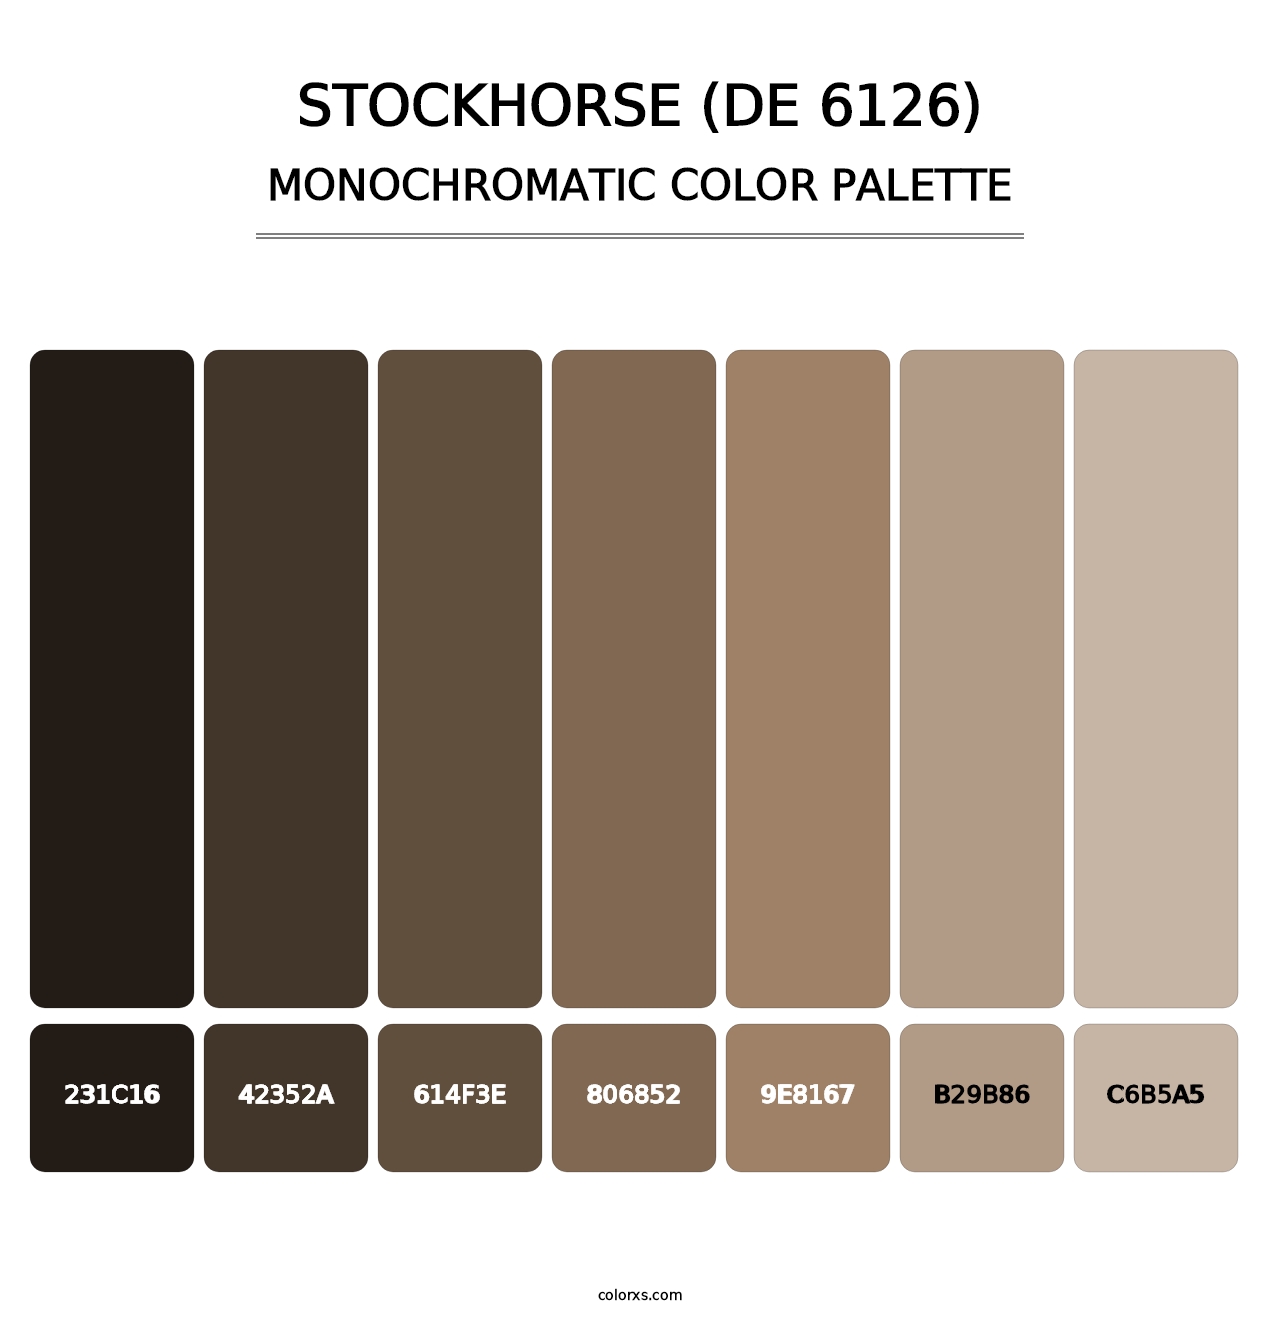 Stockhorse (DE 6126) - Monochromatic Color Palette